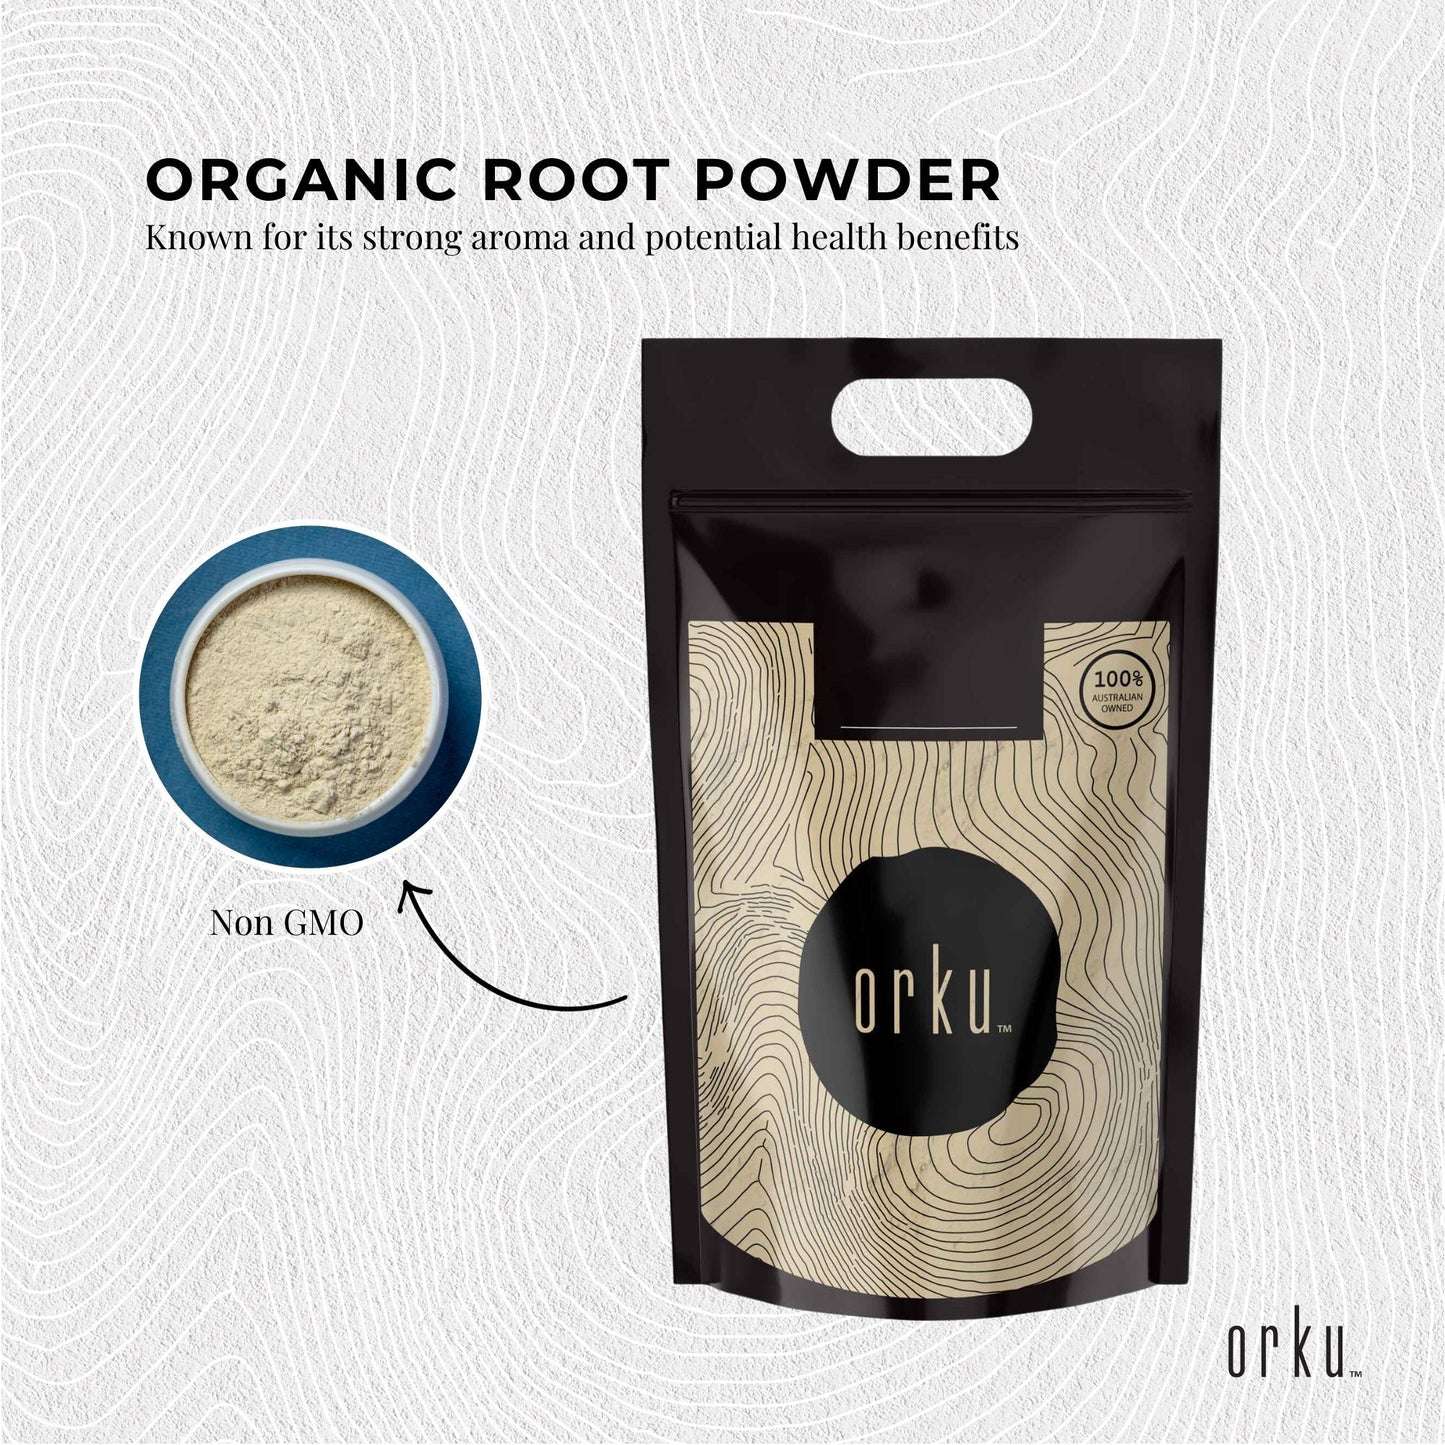 Bulk 20Kg Organic Ashwagandha Root Powder Withania Somnifera Herb Supplement